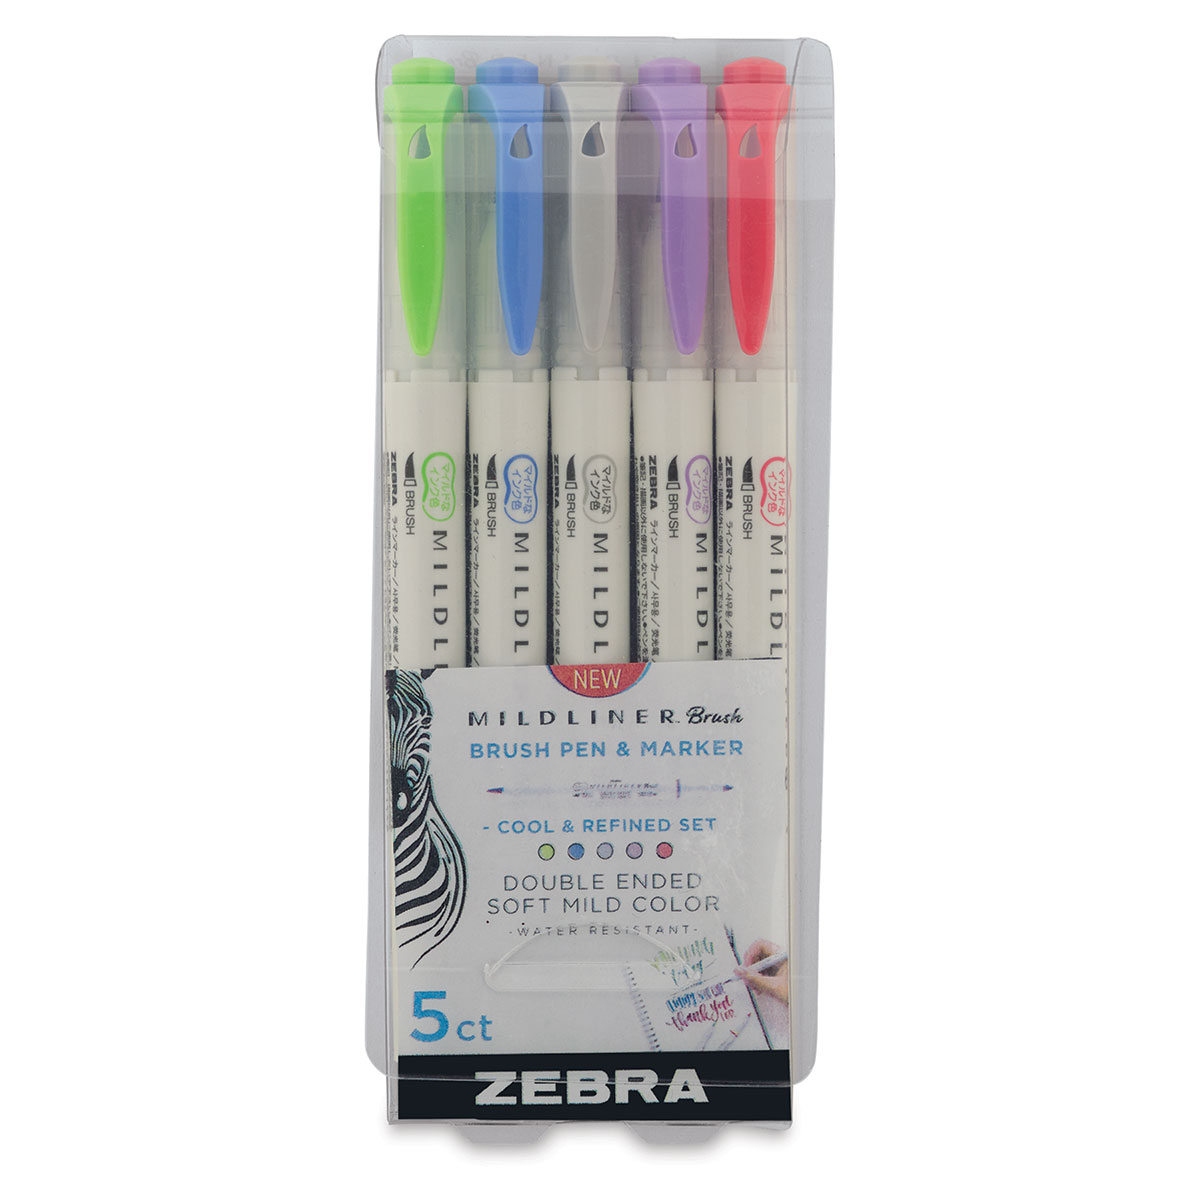  Zebra Pen Pen Mildliner, Assorted colors, 15-Count